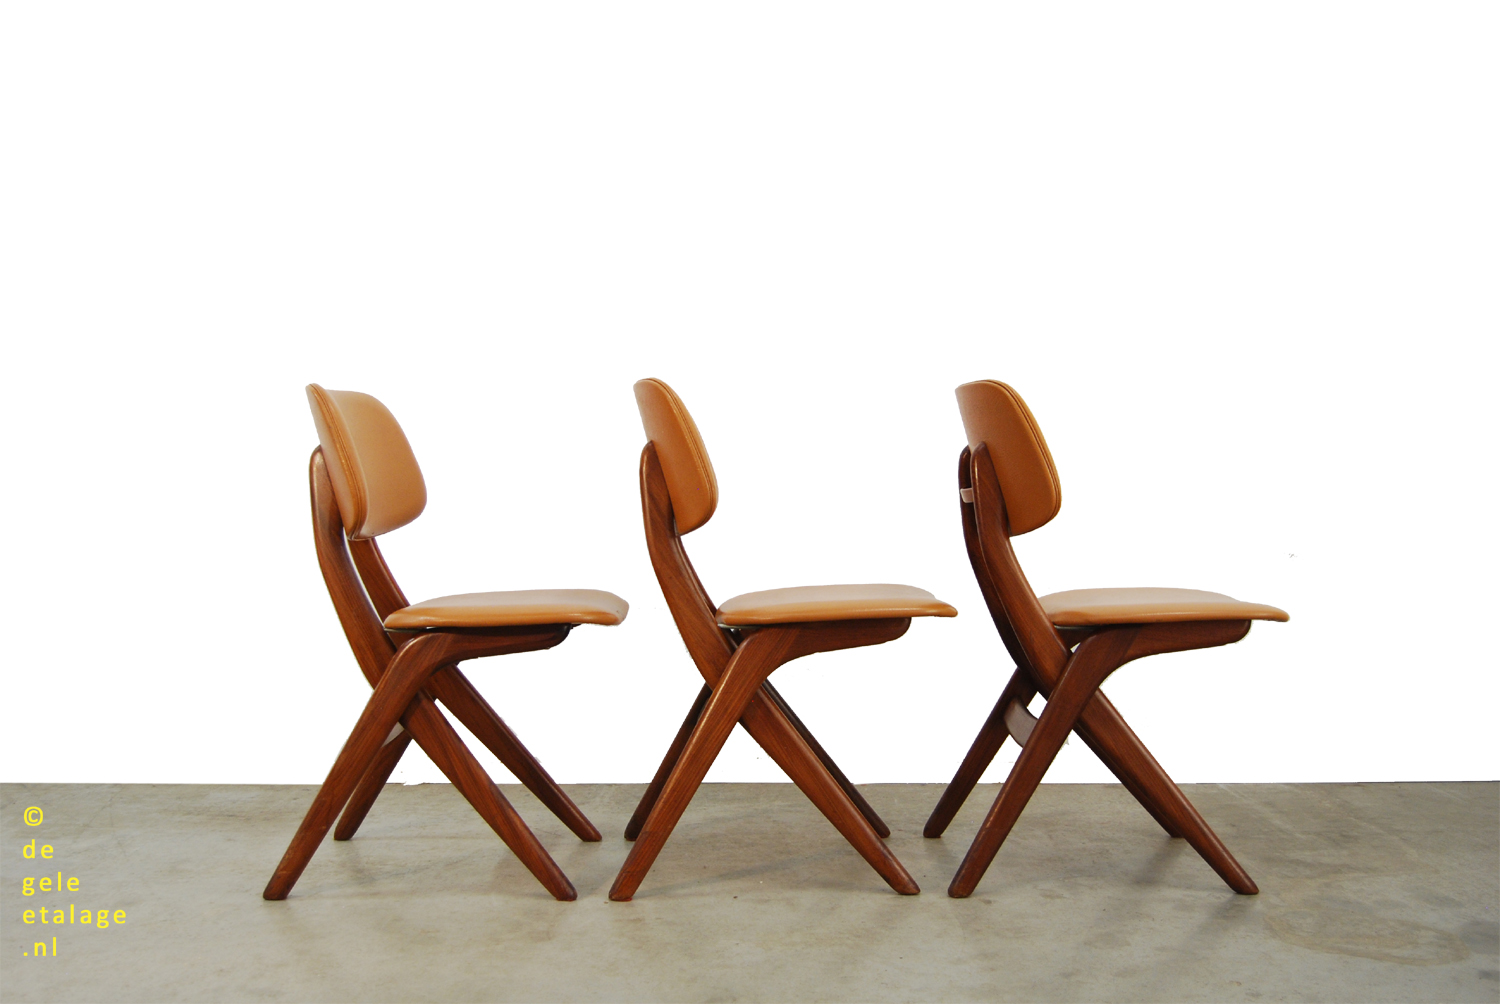 / Vintage teakhouten eettafel stoelen / Louis van Teeffelen / Webe / 1960s / scissor chairs | DE GELE ETALAGE